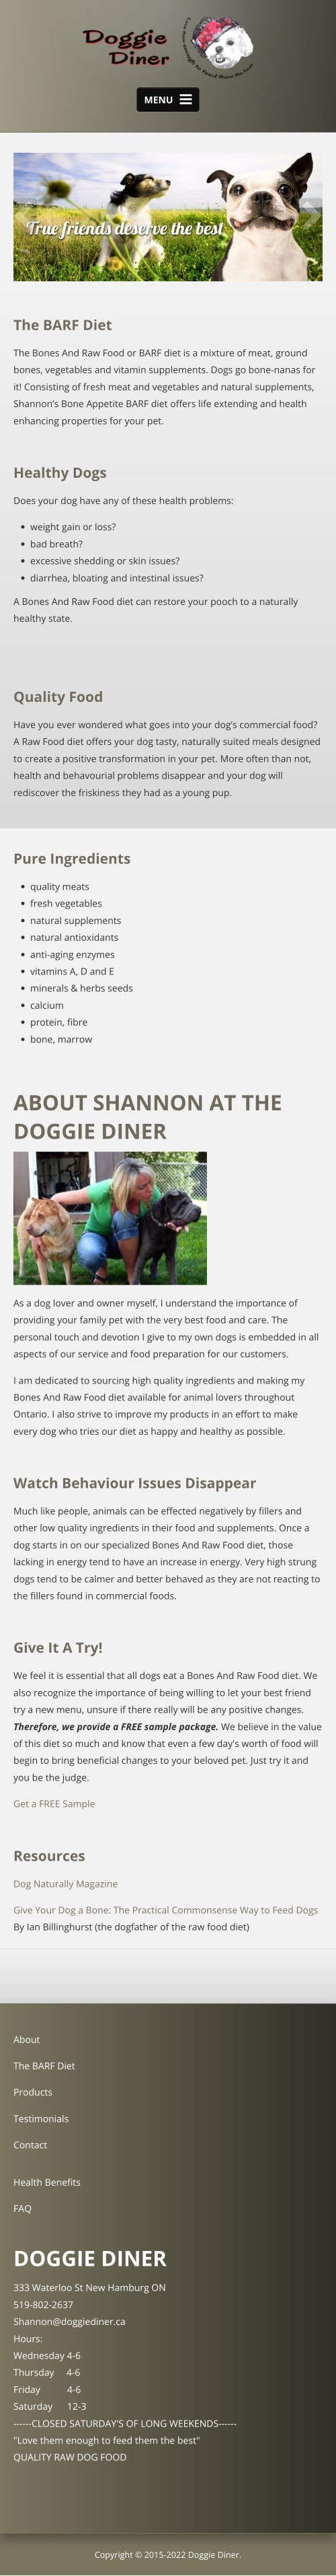 Doggie Diner Website - Mobile